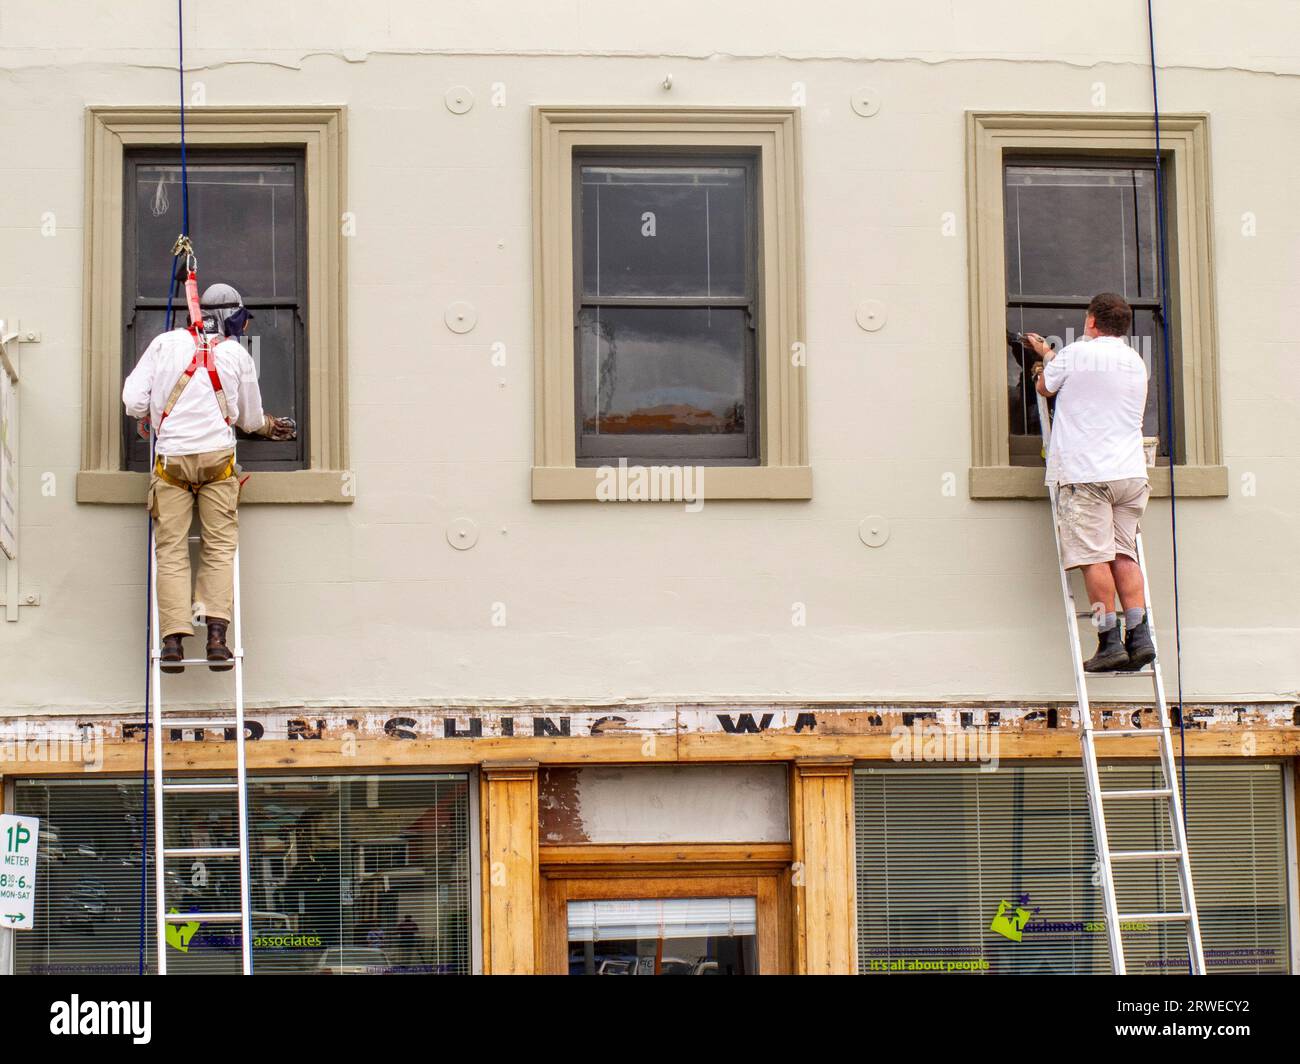 Maler auf Leitern malen die Fensterrahmen eines historischen georgianischen Shopfront in Melville Street, Hobart, Tasmanien. Aus Sicht der Gesundheit und Sicherheit trägt man einen Sicherheitsgurt, der andere nicht. Stockfoto